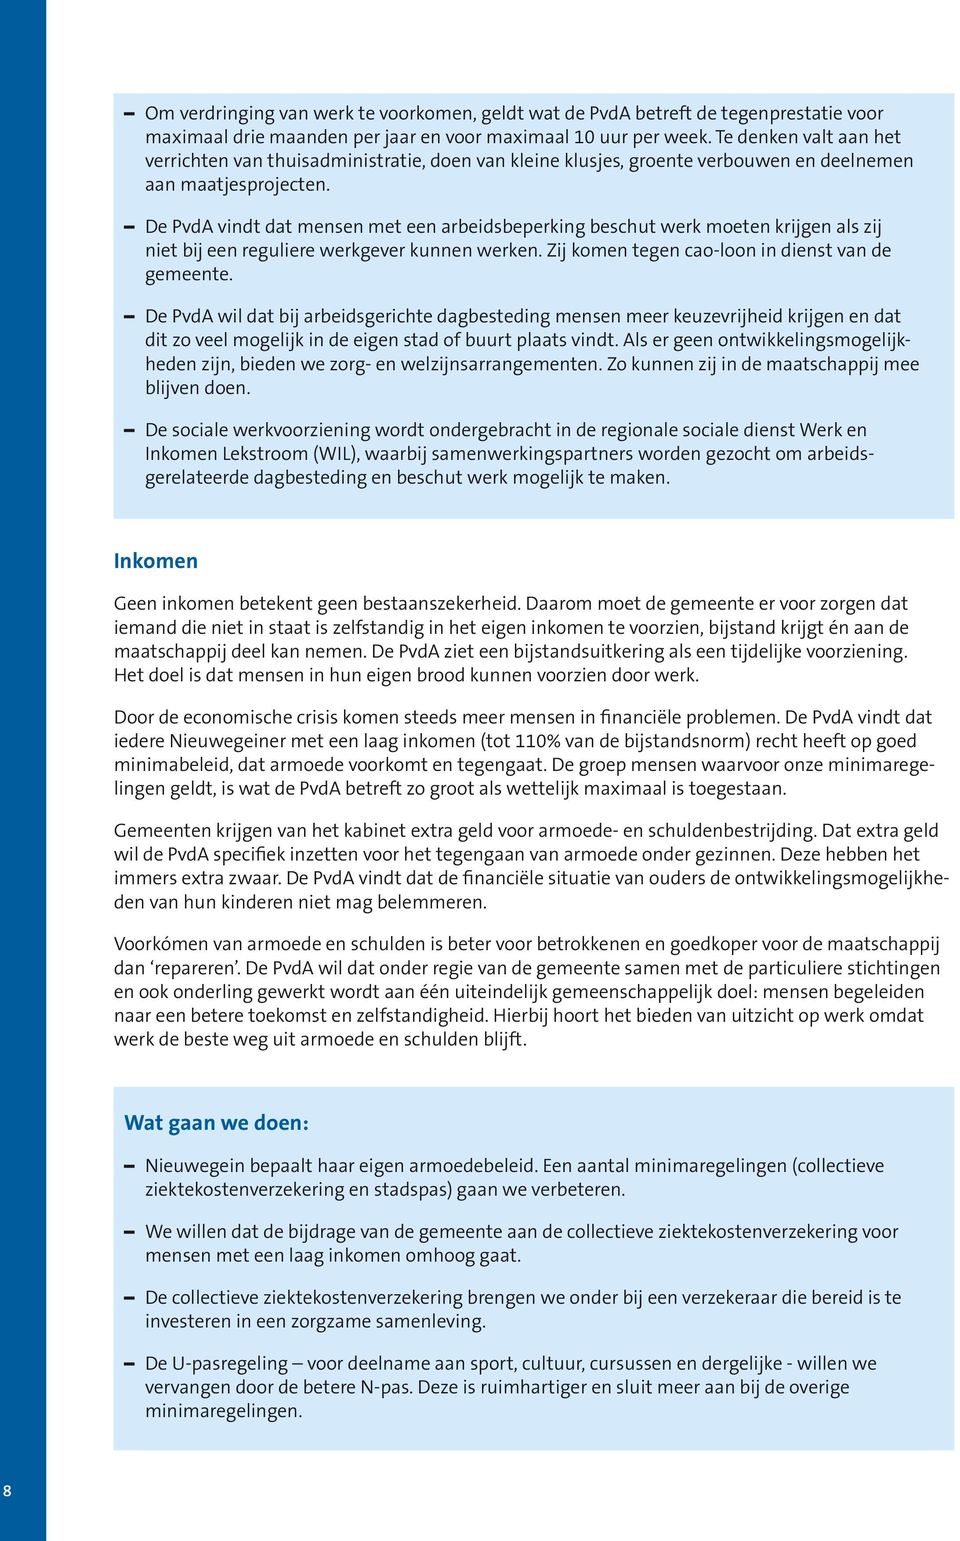 De PvdA vindt dat mensen met een arbeidsbeperking beschut werk moeten krijgen als zij niet bij een reguliere werkgever kunnen werken. Zij komen tegen cao-loon in dienst van de gemeente.